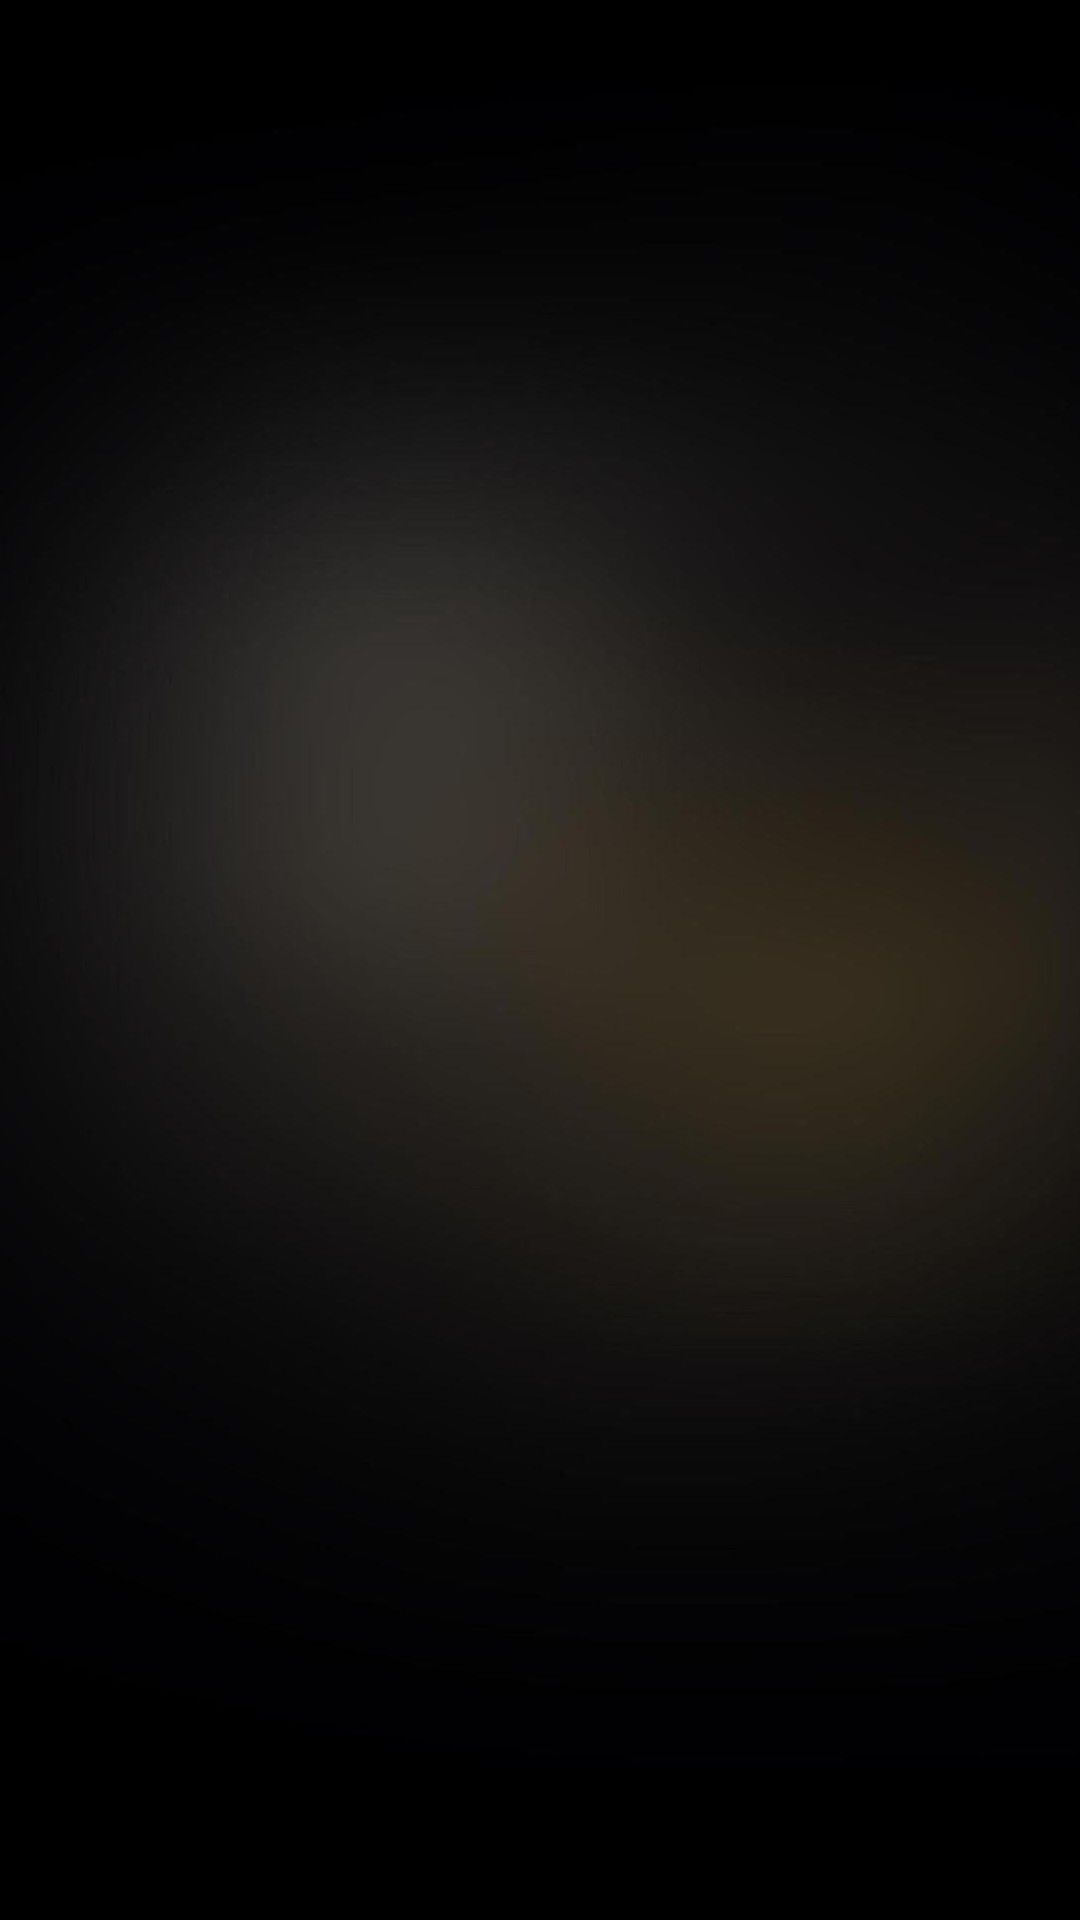 Black Blur Galaxy S4 Wallpaper (1080x1920)